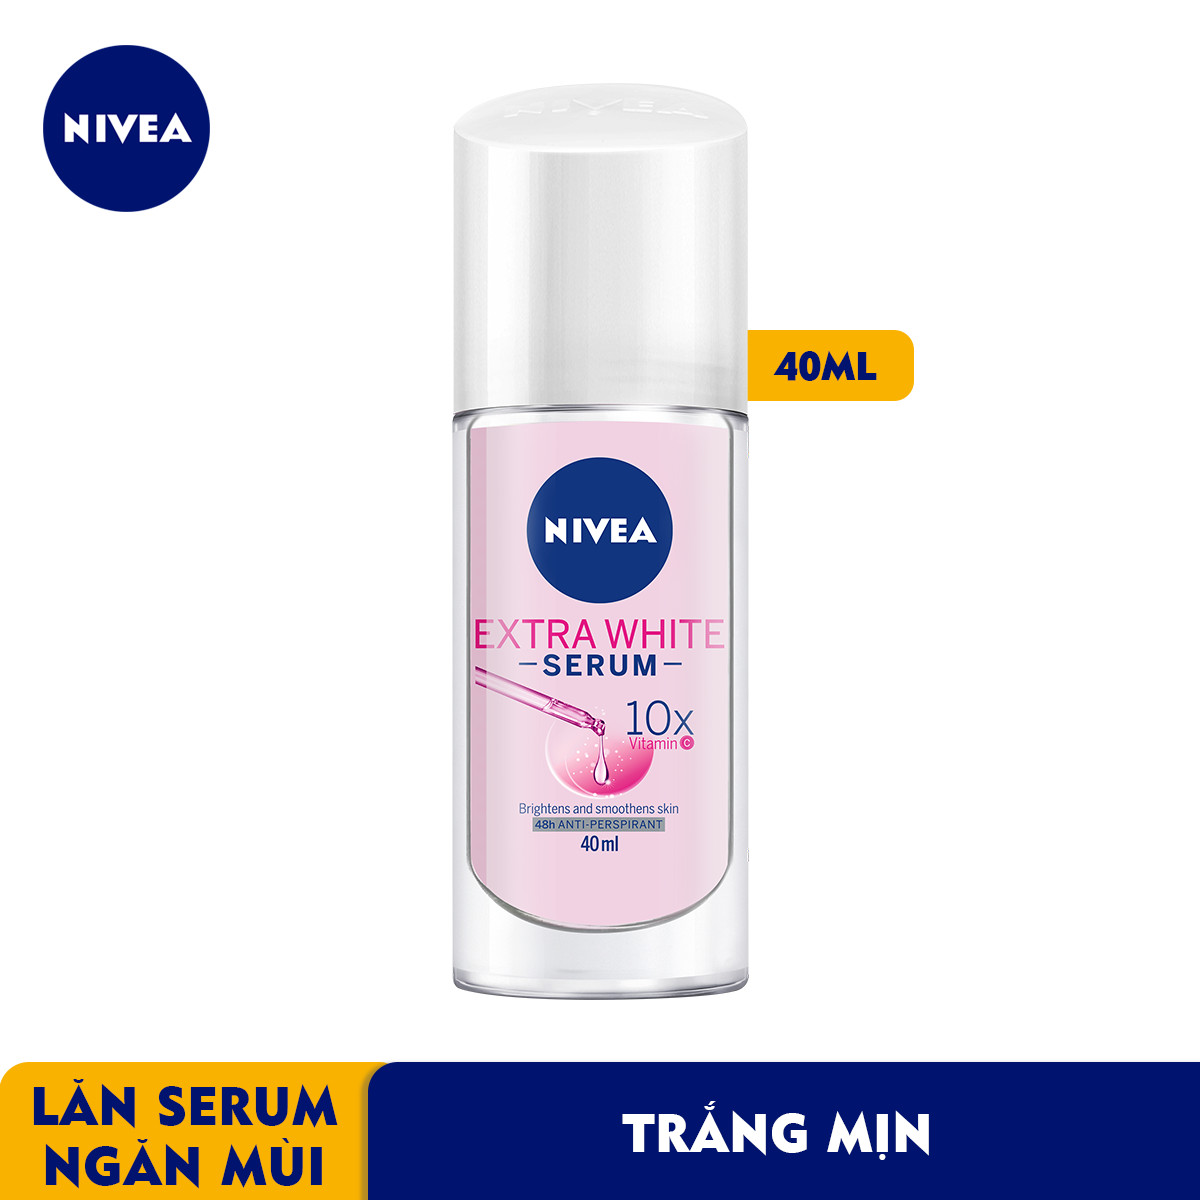 Lăn Ngăn Mùi NIVEA Serum Trắng Mịn (40ml) - 80023